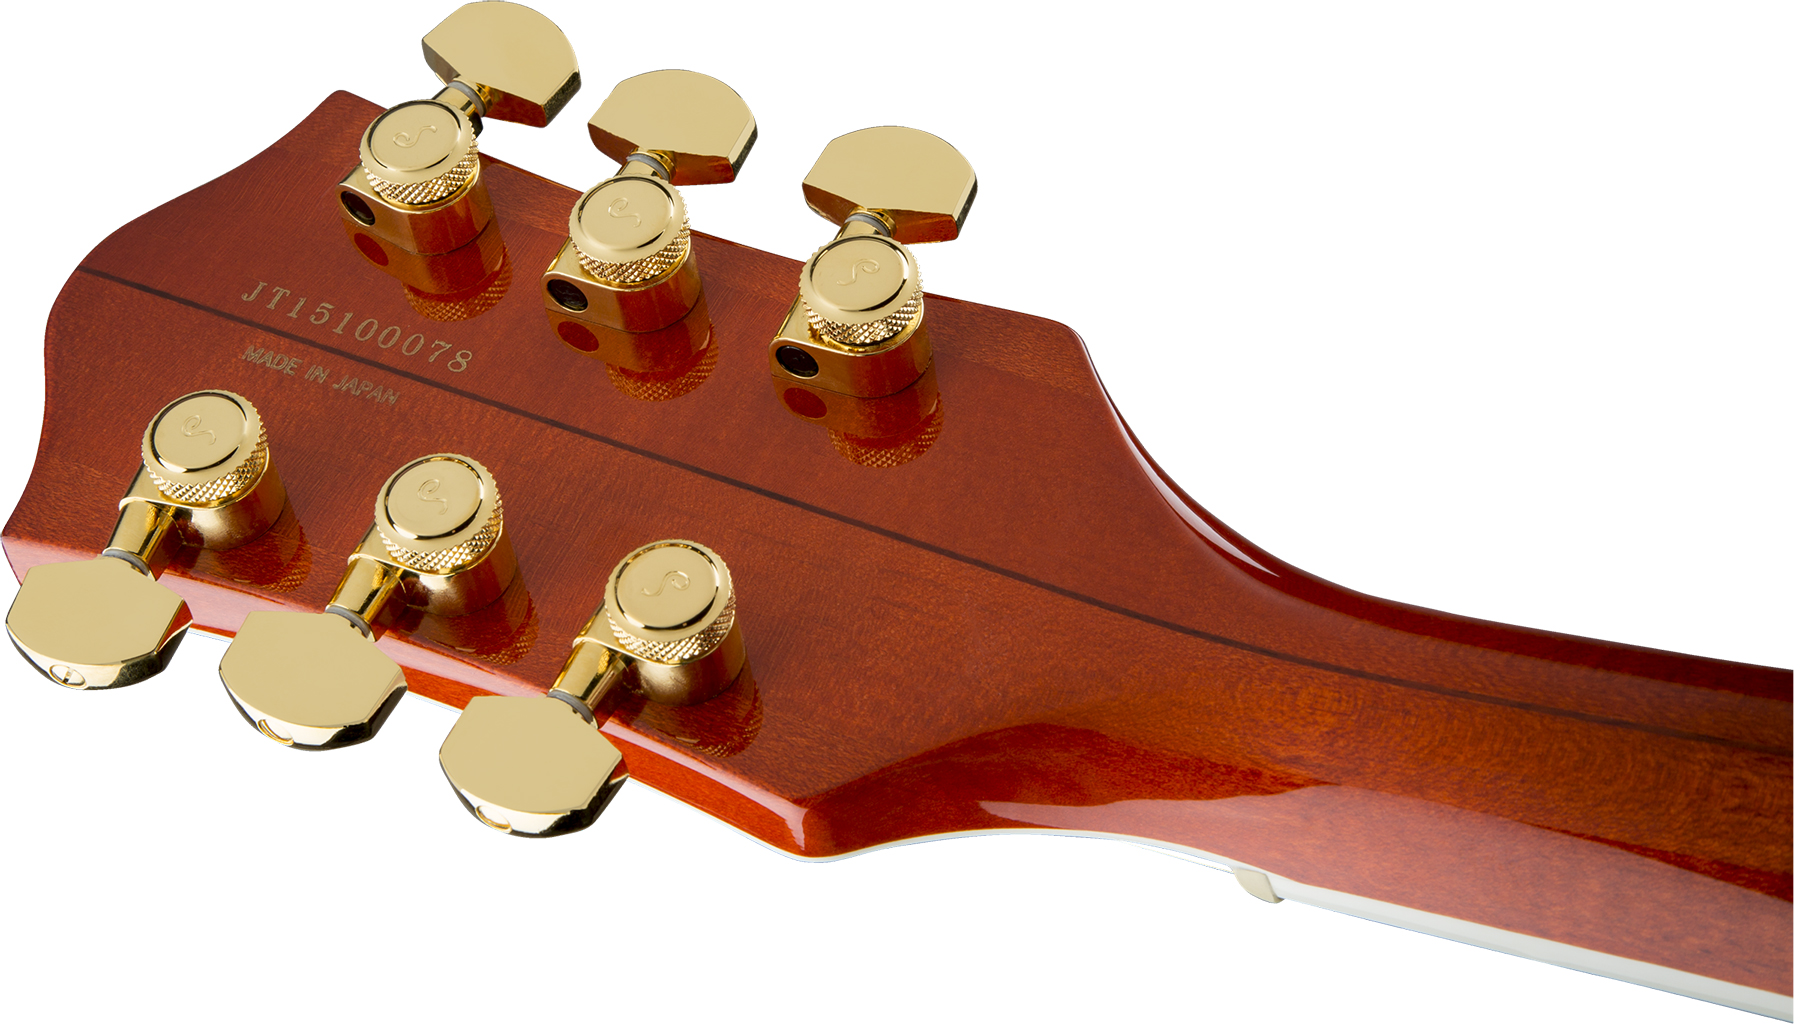 Gretsch G6120tfm Players Edition Nashville Pro Jap Bigsby Eb - Orange Stain - Semi hollow elektriche gitaar - Variation 3